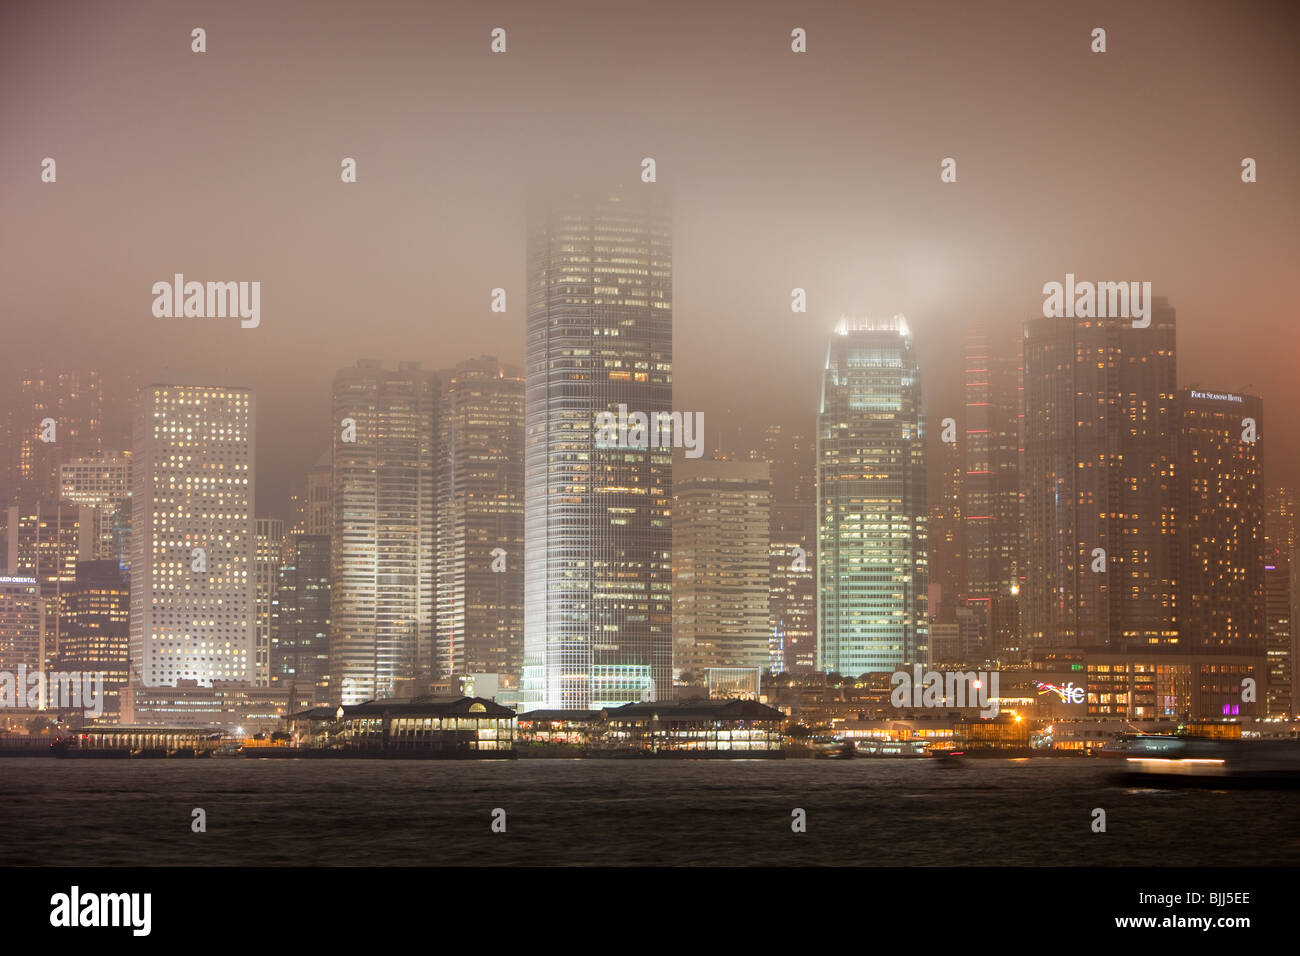 Nachts beleuchtet Bürohäuser in Hong Kong, China. Diese dicht besiedelten Stadt hat einen massiven CO2-Fußabdruck. Stockfoto